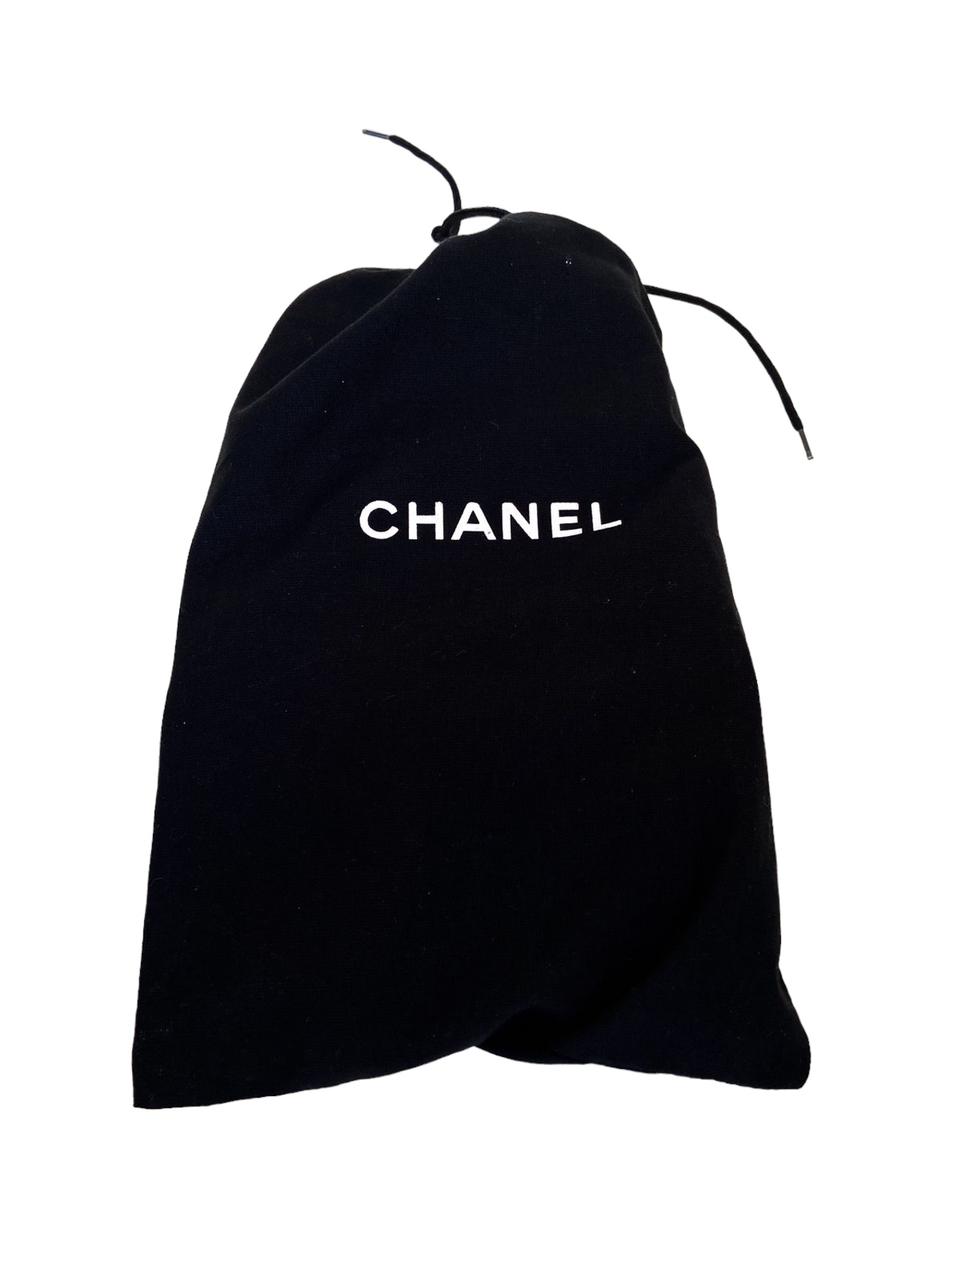 Sapatilha Chanel Azul Marinho Sola 36 Europa com Dustbag